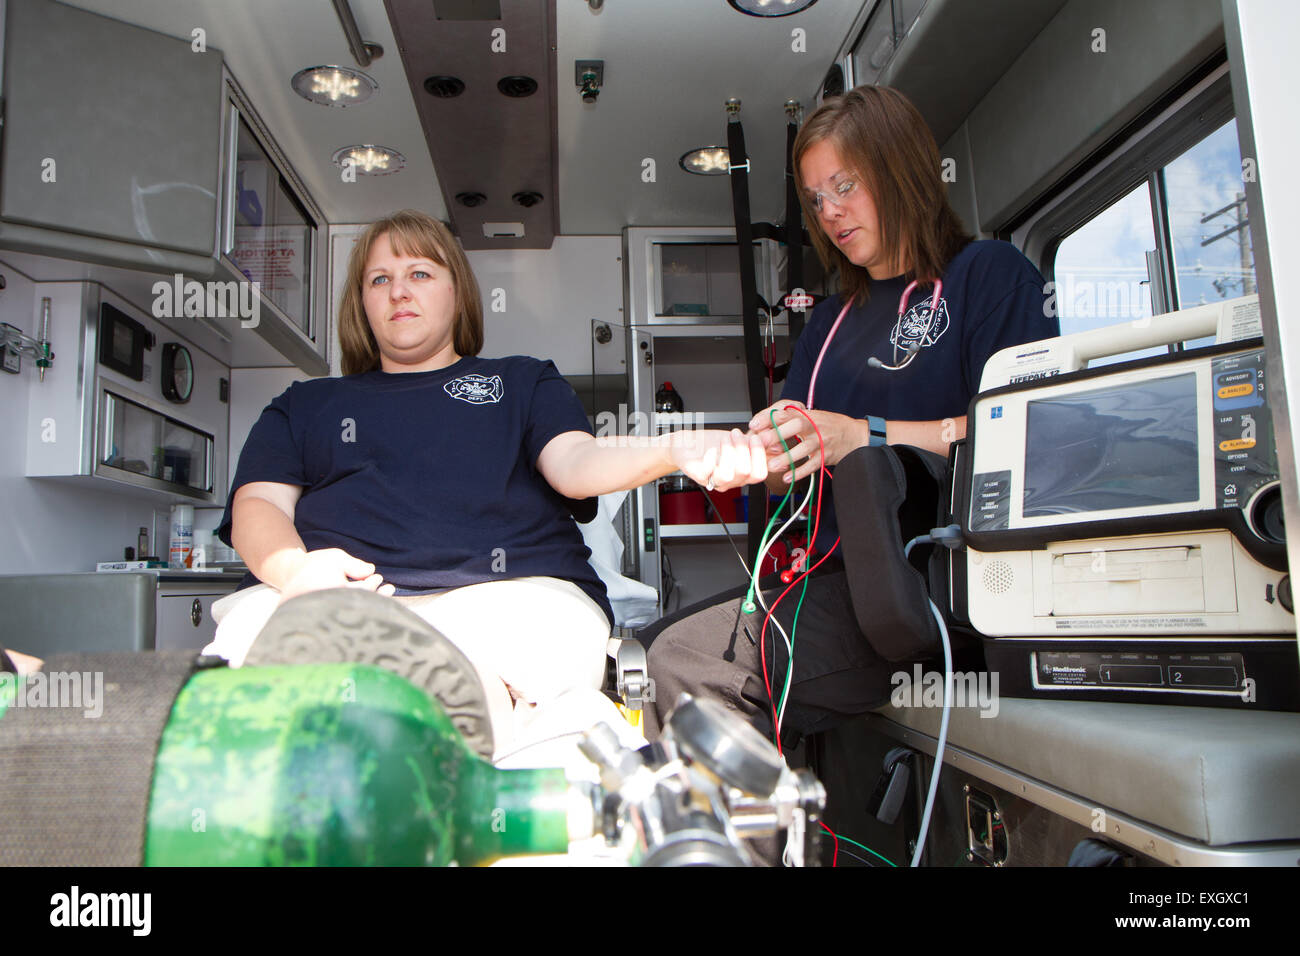 Weibliche Sanitäter arbeiten auf der Rückseite einen Krankenwagen. Ländliche Freiwillige Feuerwehr von US. Stockfoto